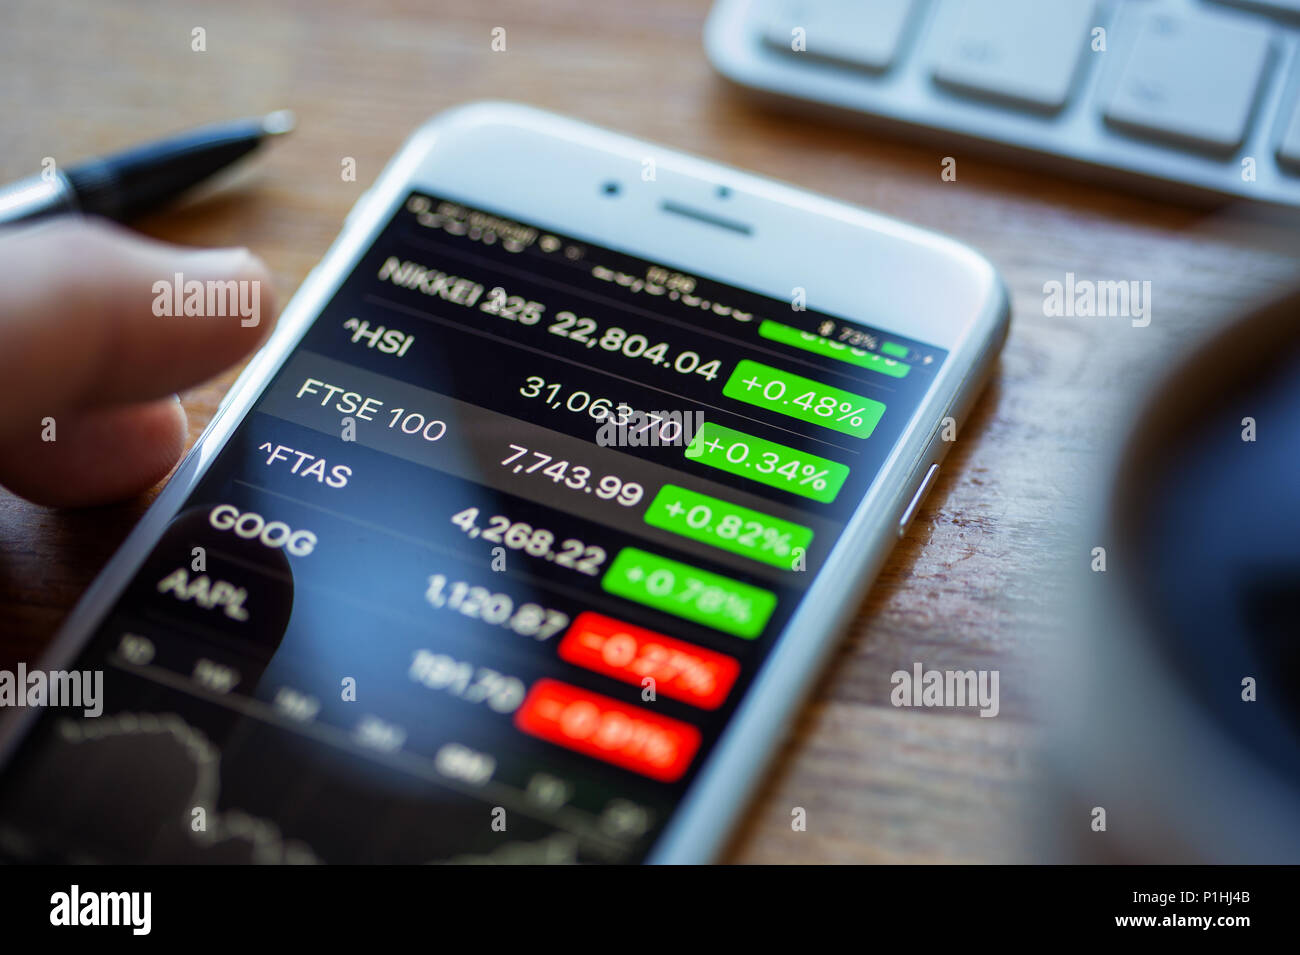 BATH, Regno Unito - 11 Giugno 2018 : un Apple iPhone 6 su una scrivania visualizzando le informazioni sul mercato azionario utilizzando le azioni Apple app. Una mano umana si libra sopra il FT Foto Stock